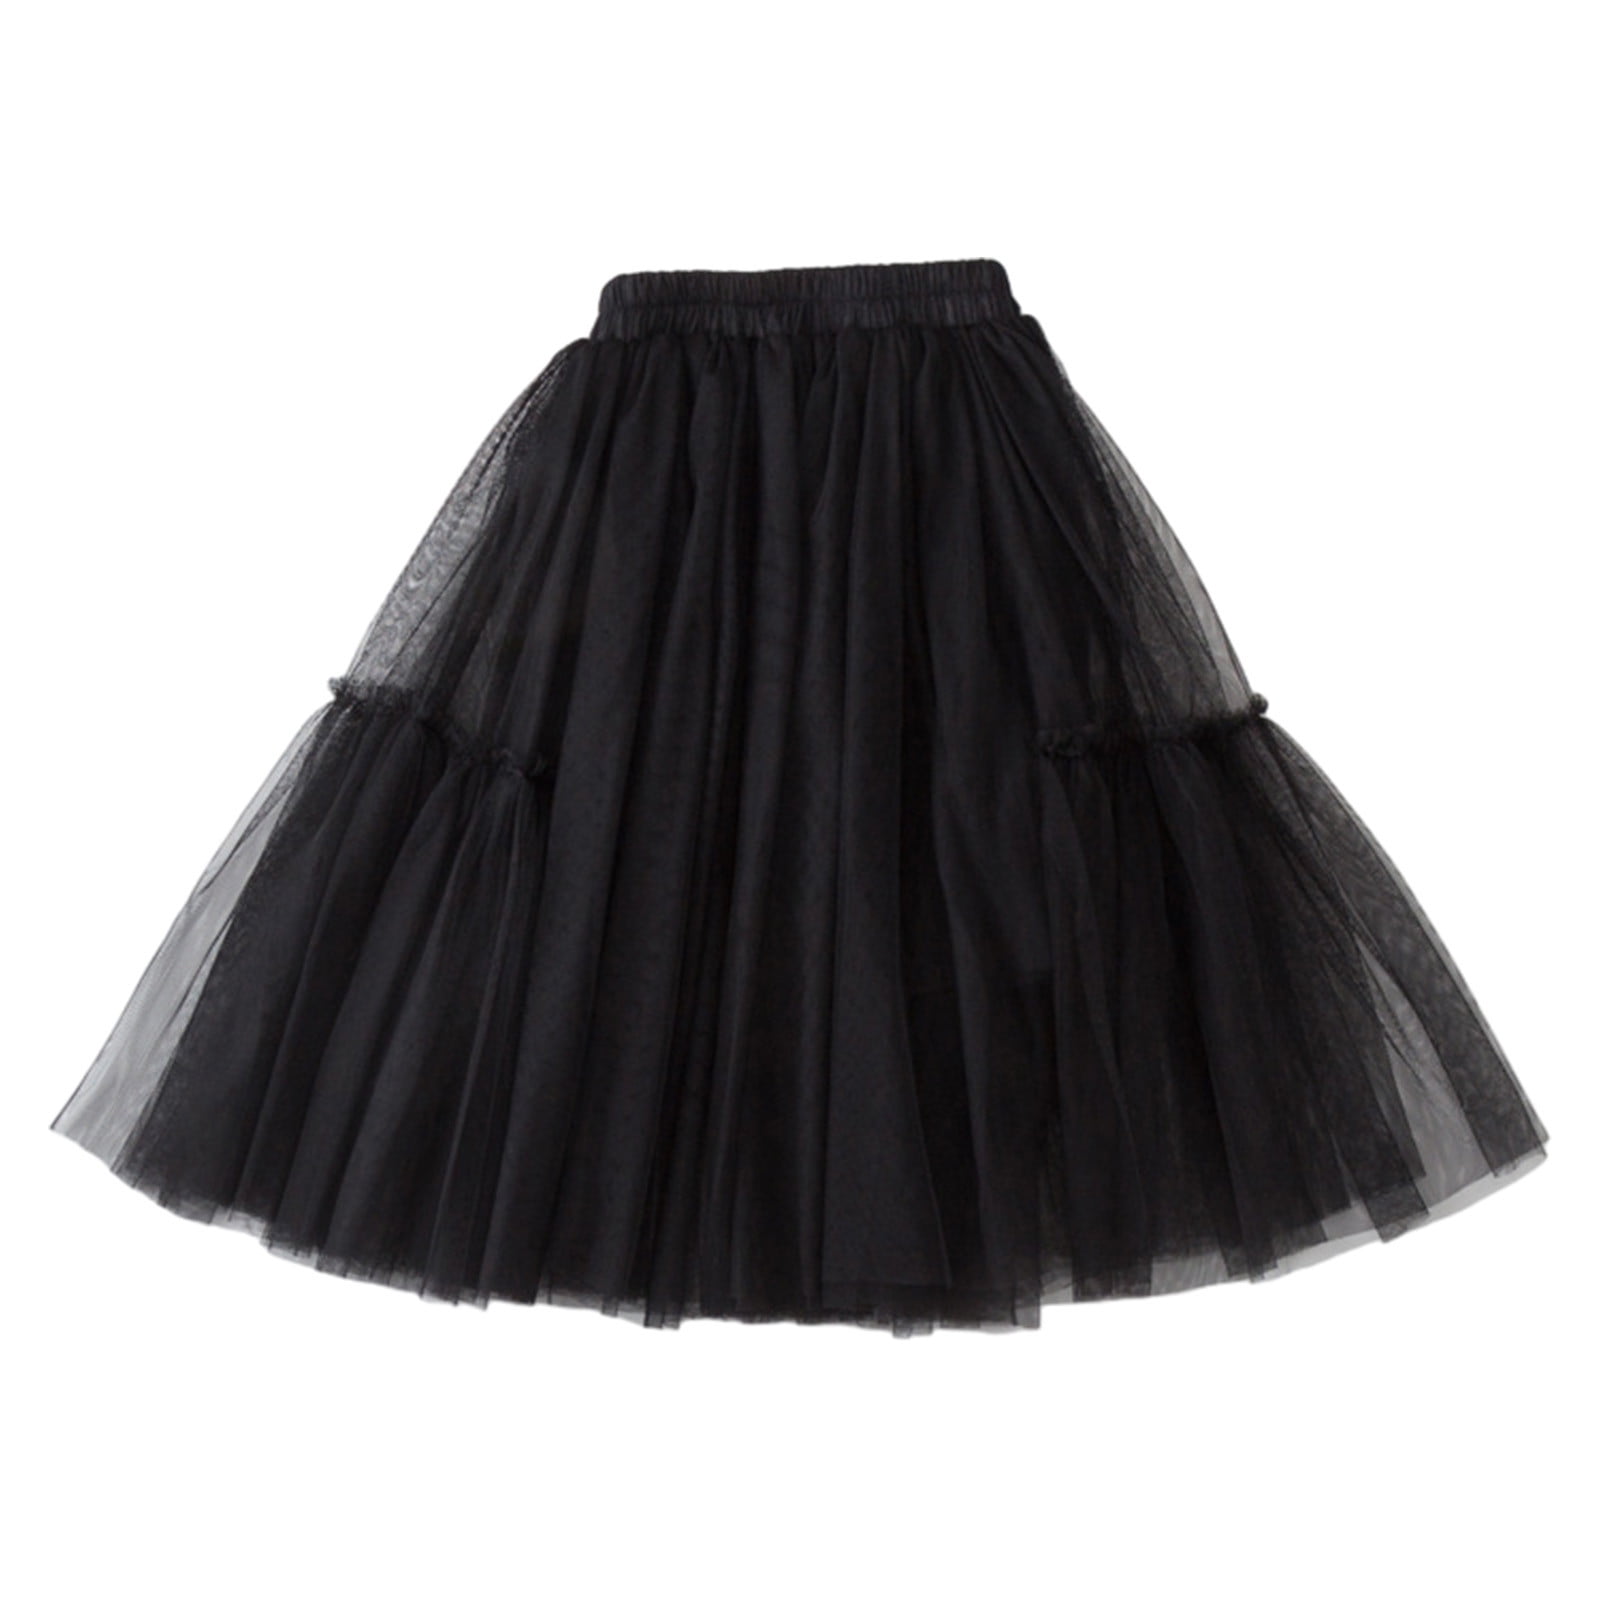 Little Girls Tulle Skirt Bow Elastic Short Dress Summer Lightweight ...